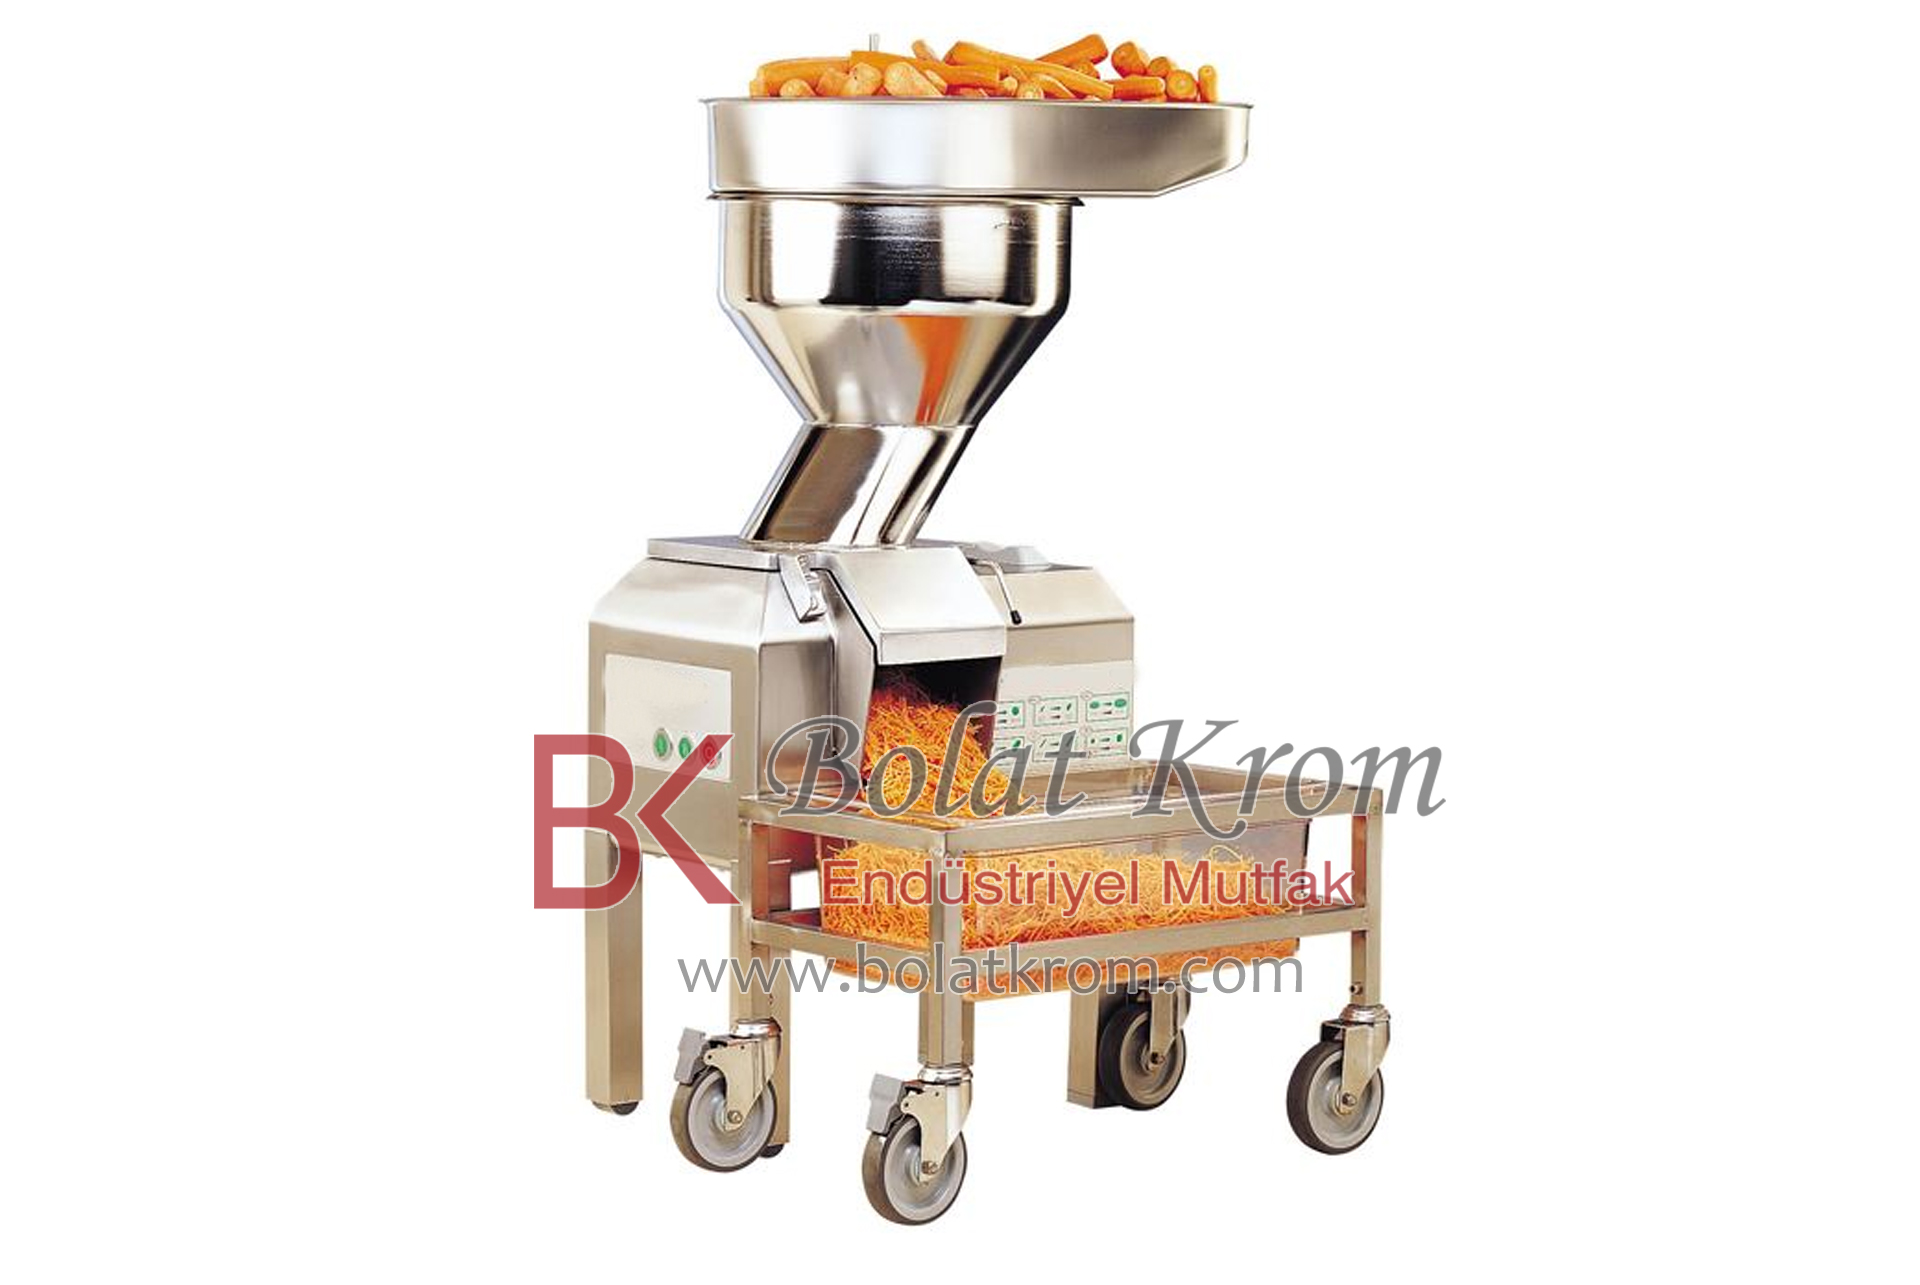 Endüstriyel Mutfak Makine Grubu, Robot Coupe Sebze Doğrama Makinesi özellikleri, ebatları ve üretimi İzmir'de Bolat Krom Endüstriyel Mutfak Ekipmanları tarafından yapılır.